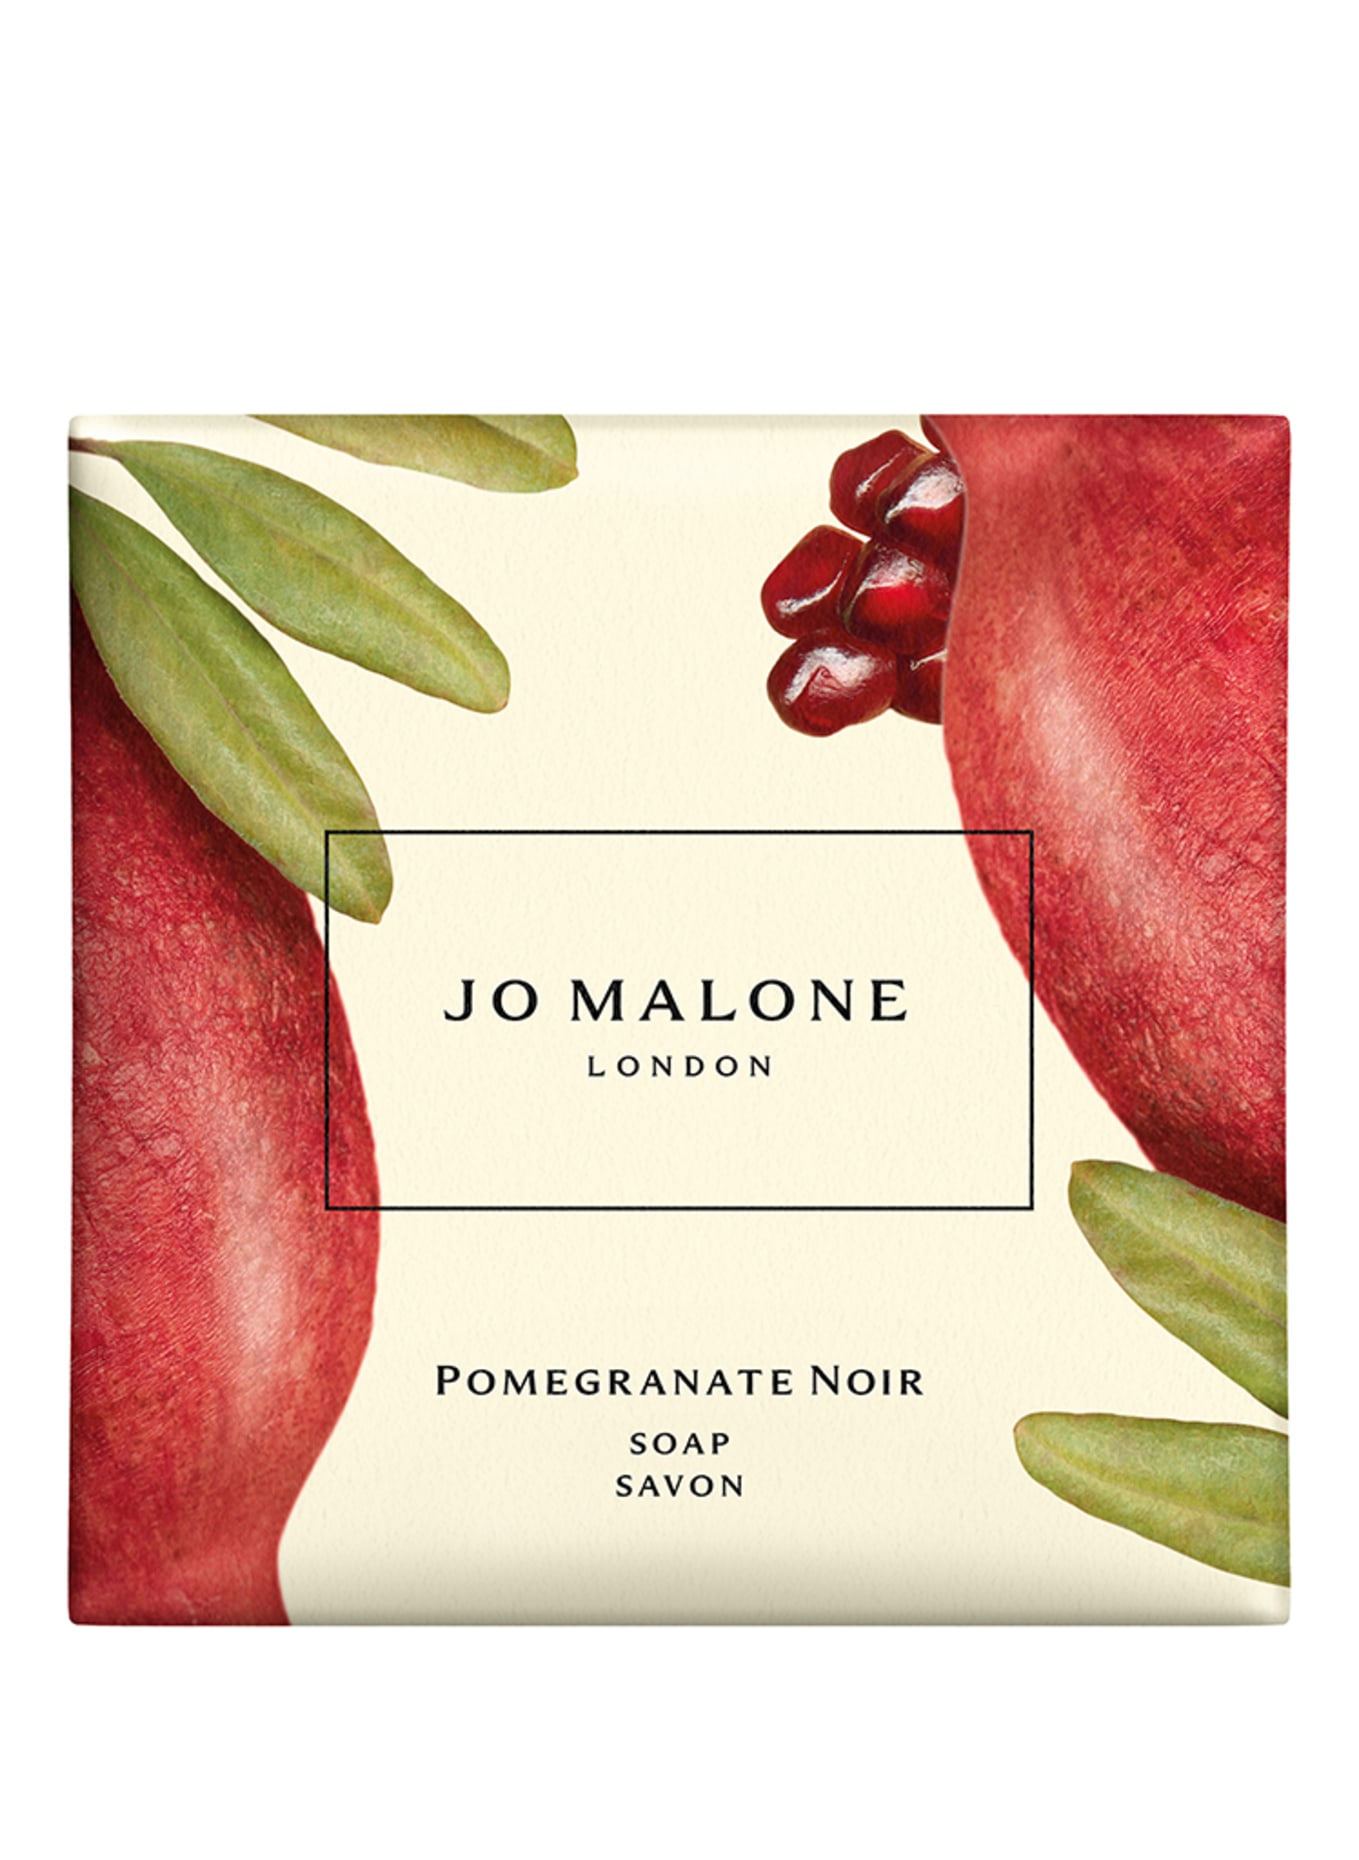 JO MALONE LONDON POMEGRANATE NOIR SOAP (Obrázek 1)